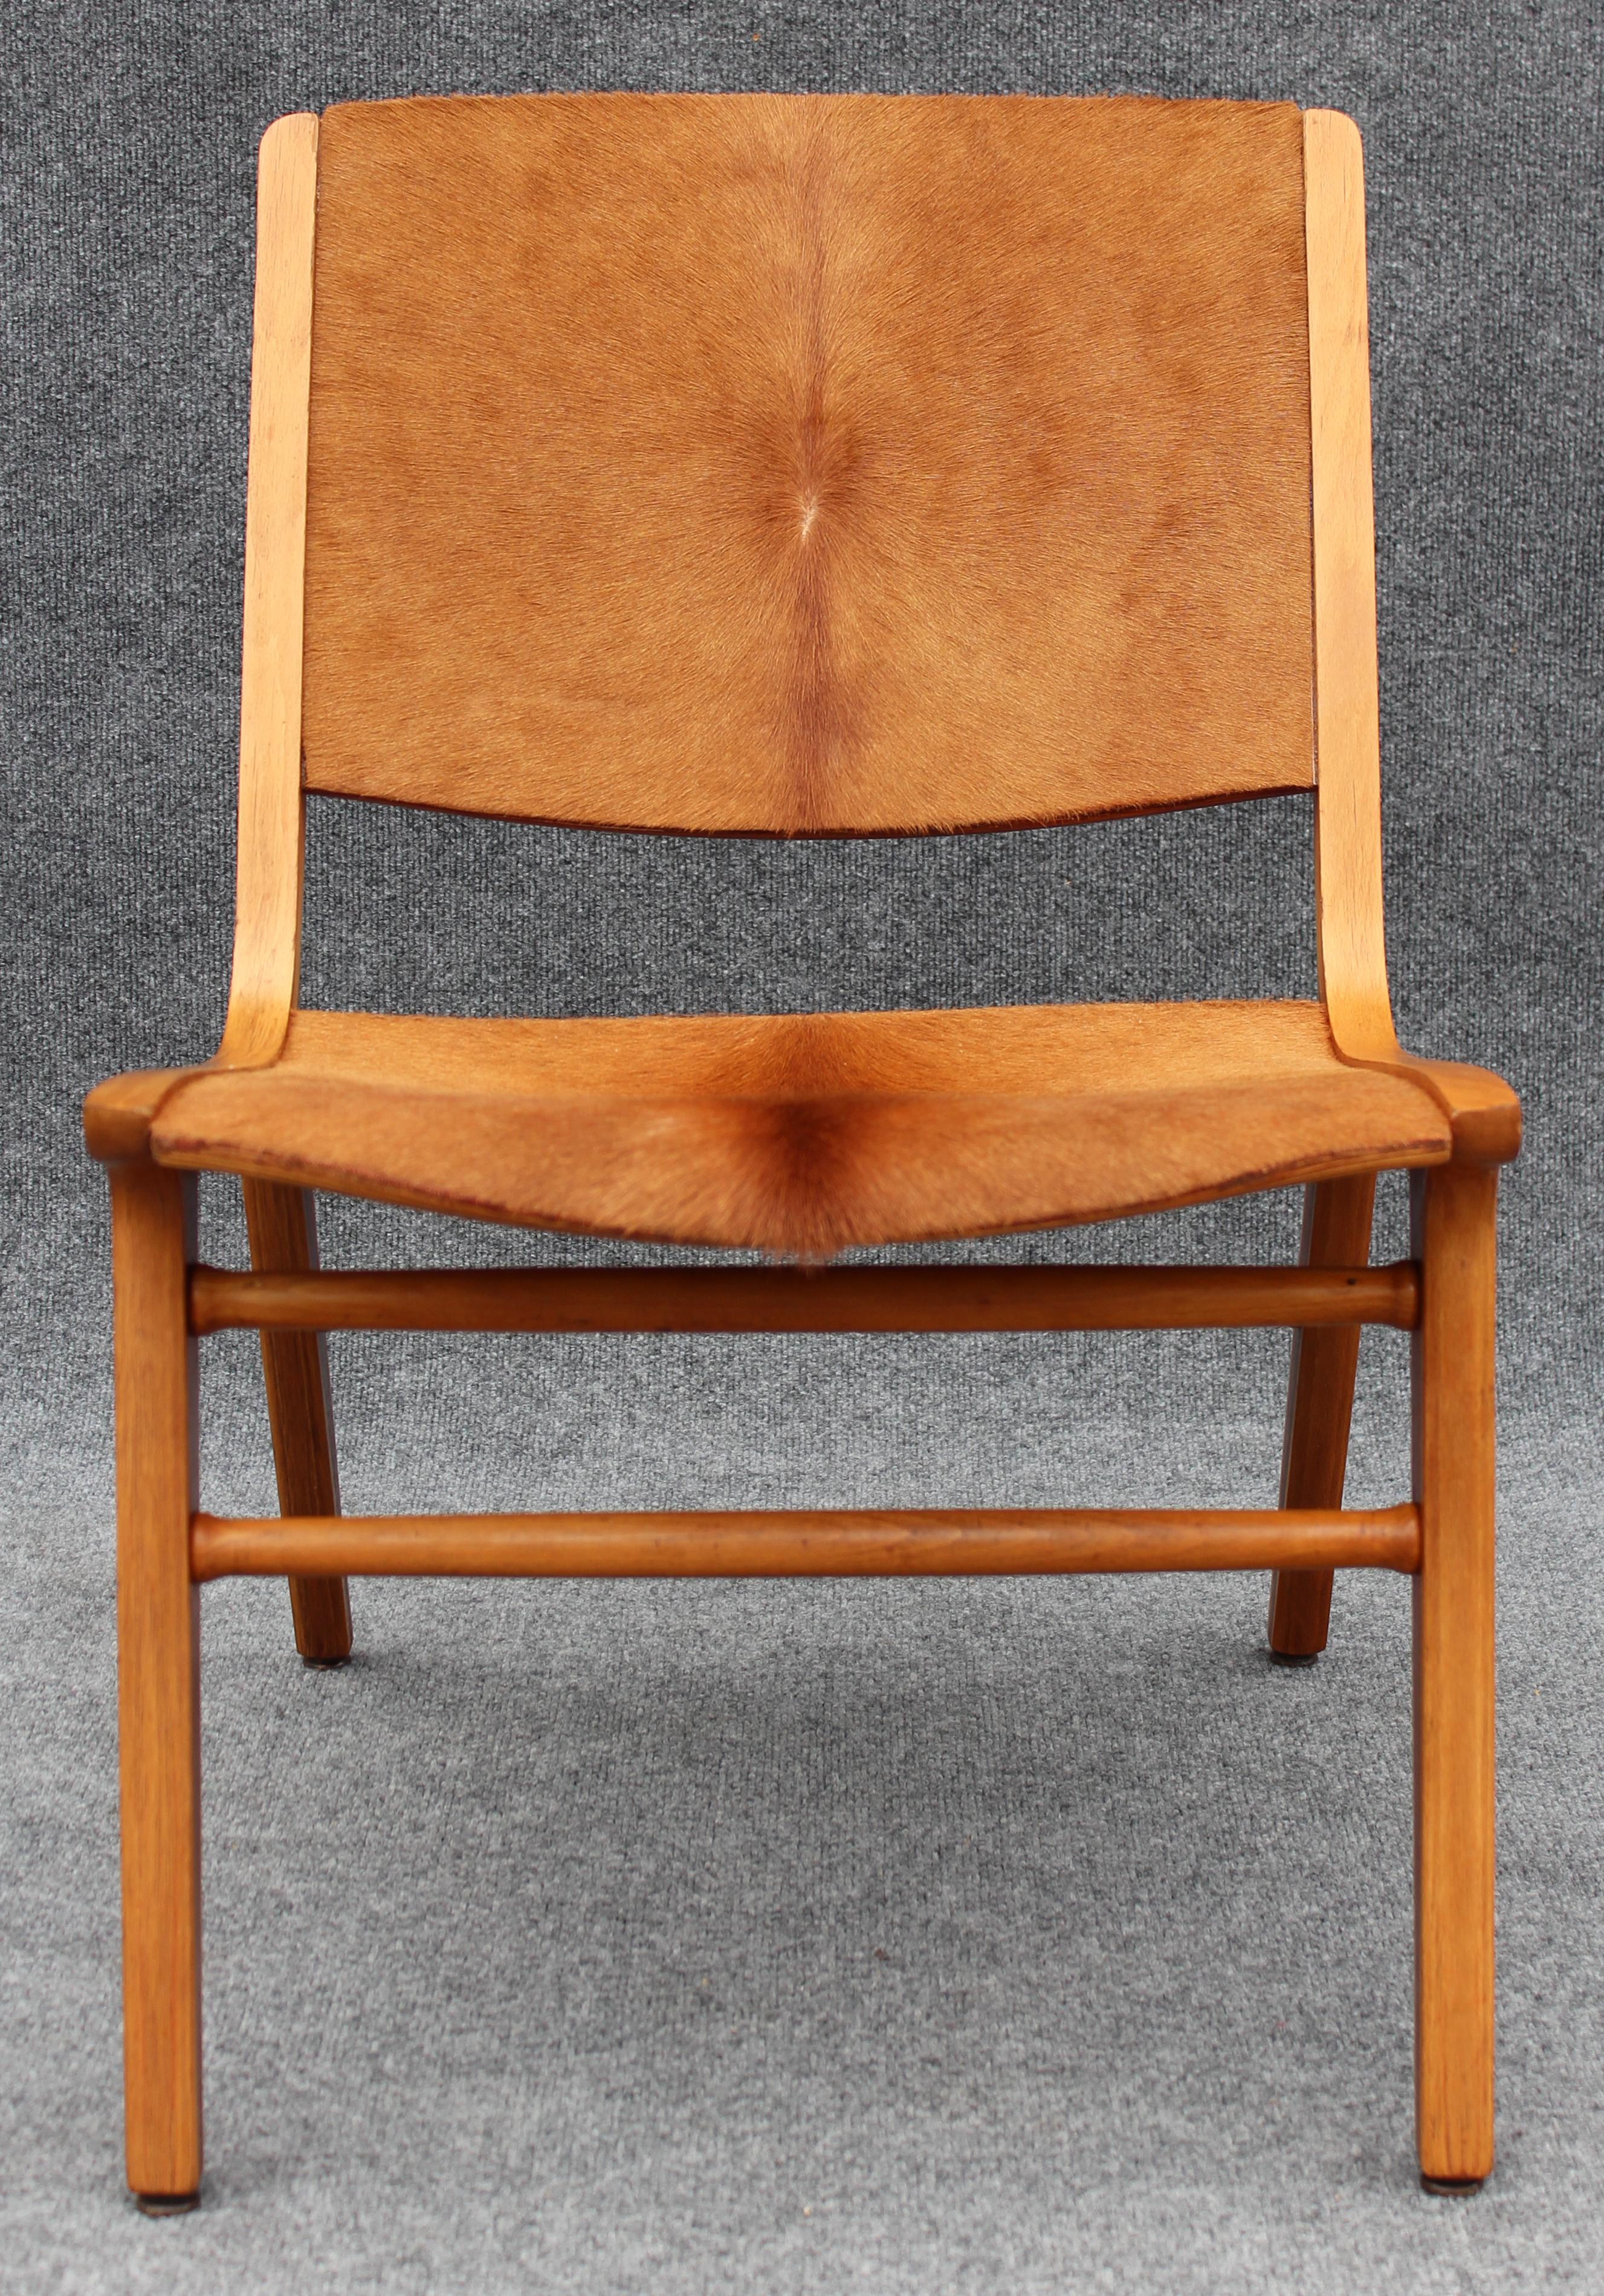 Conçue par deux des designers danois les plus emblématiques et les plus acclamés par la critique, la chaise Ax a été réalisée par Peters Hansen en partenariat avec Orla Molgaard Nielsen pour la production de Fritz Hansen. S'inspirant de la forme du